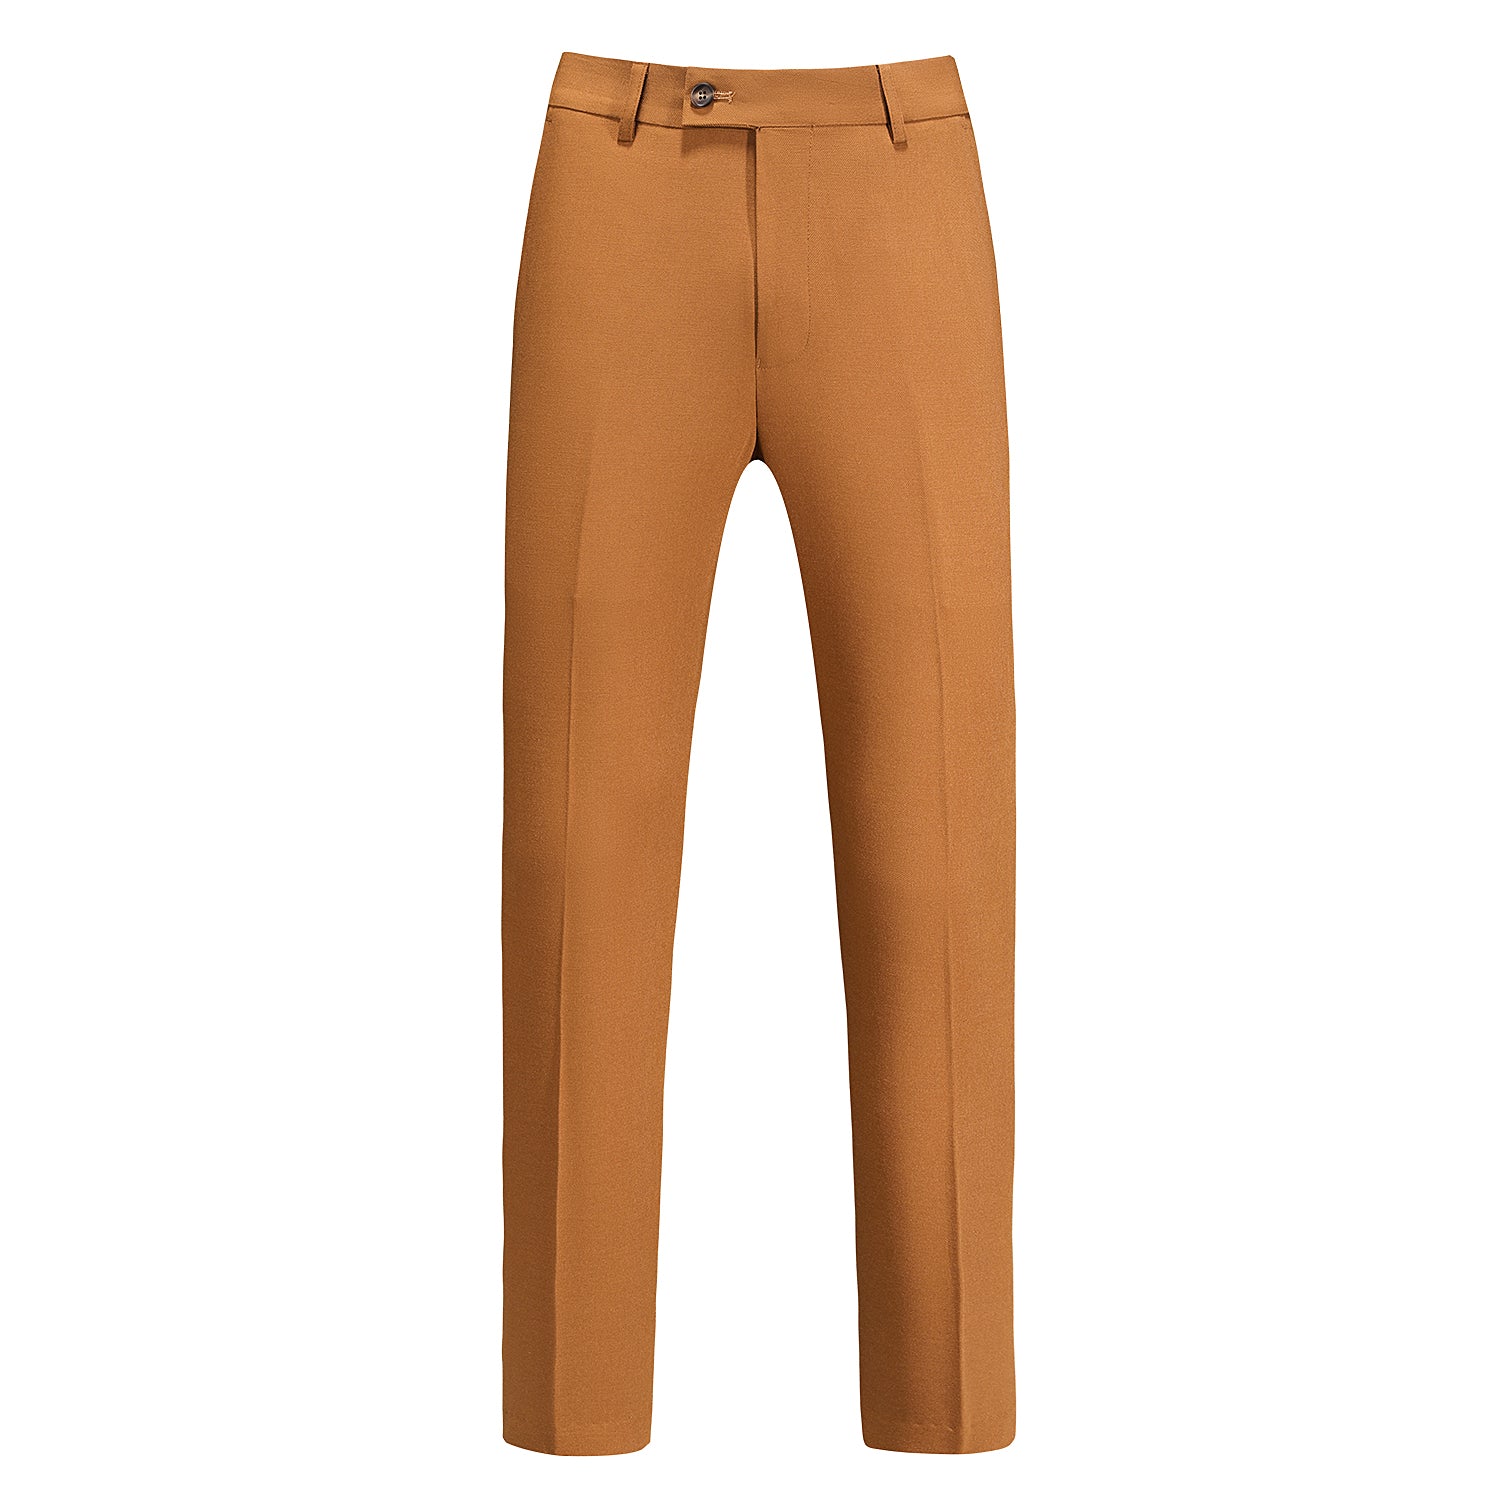 Men's 2 Piece Slim Fit Suit in Solid Brown